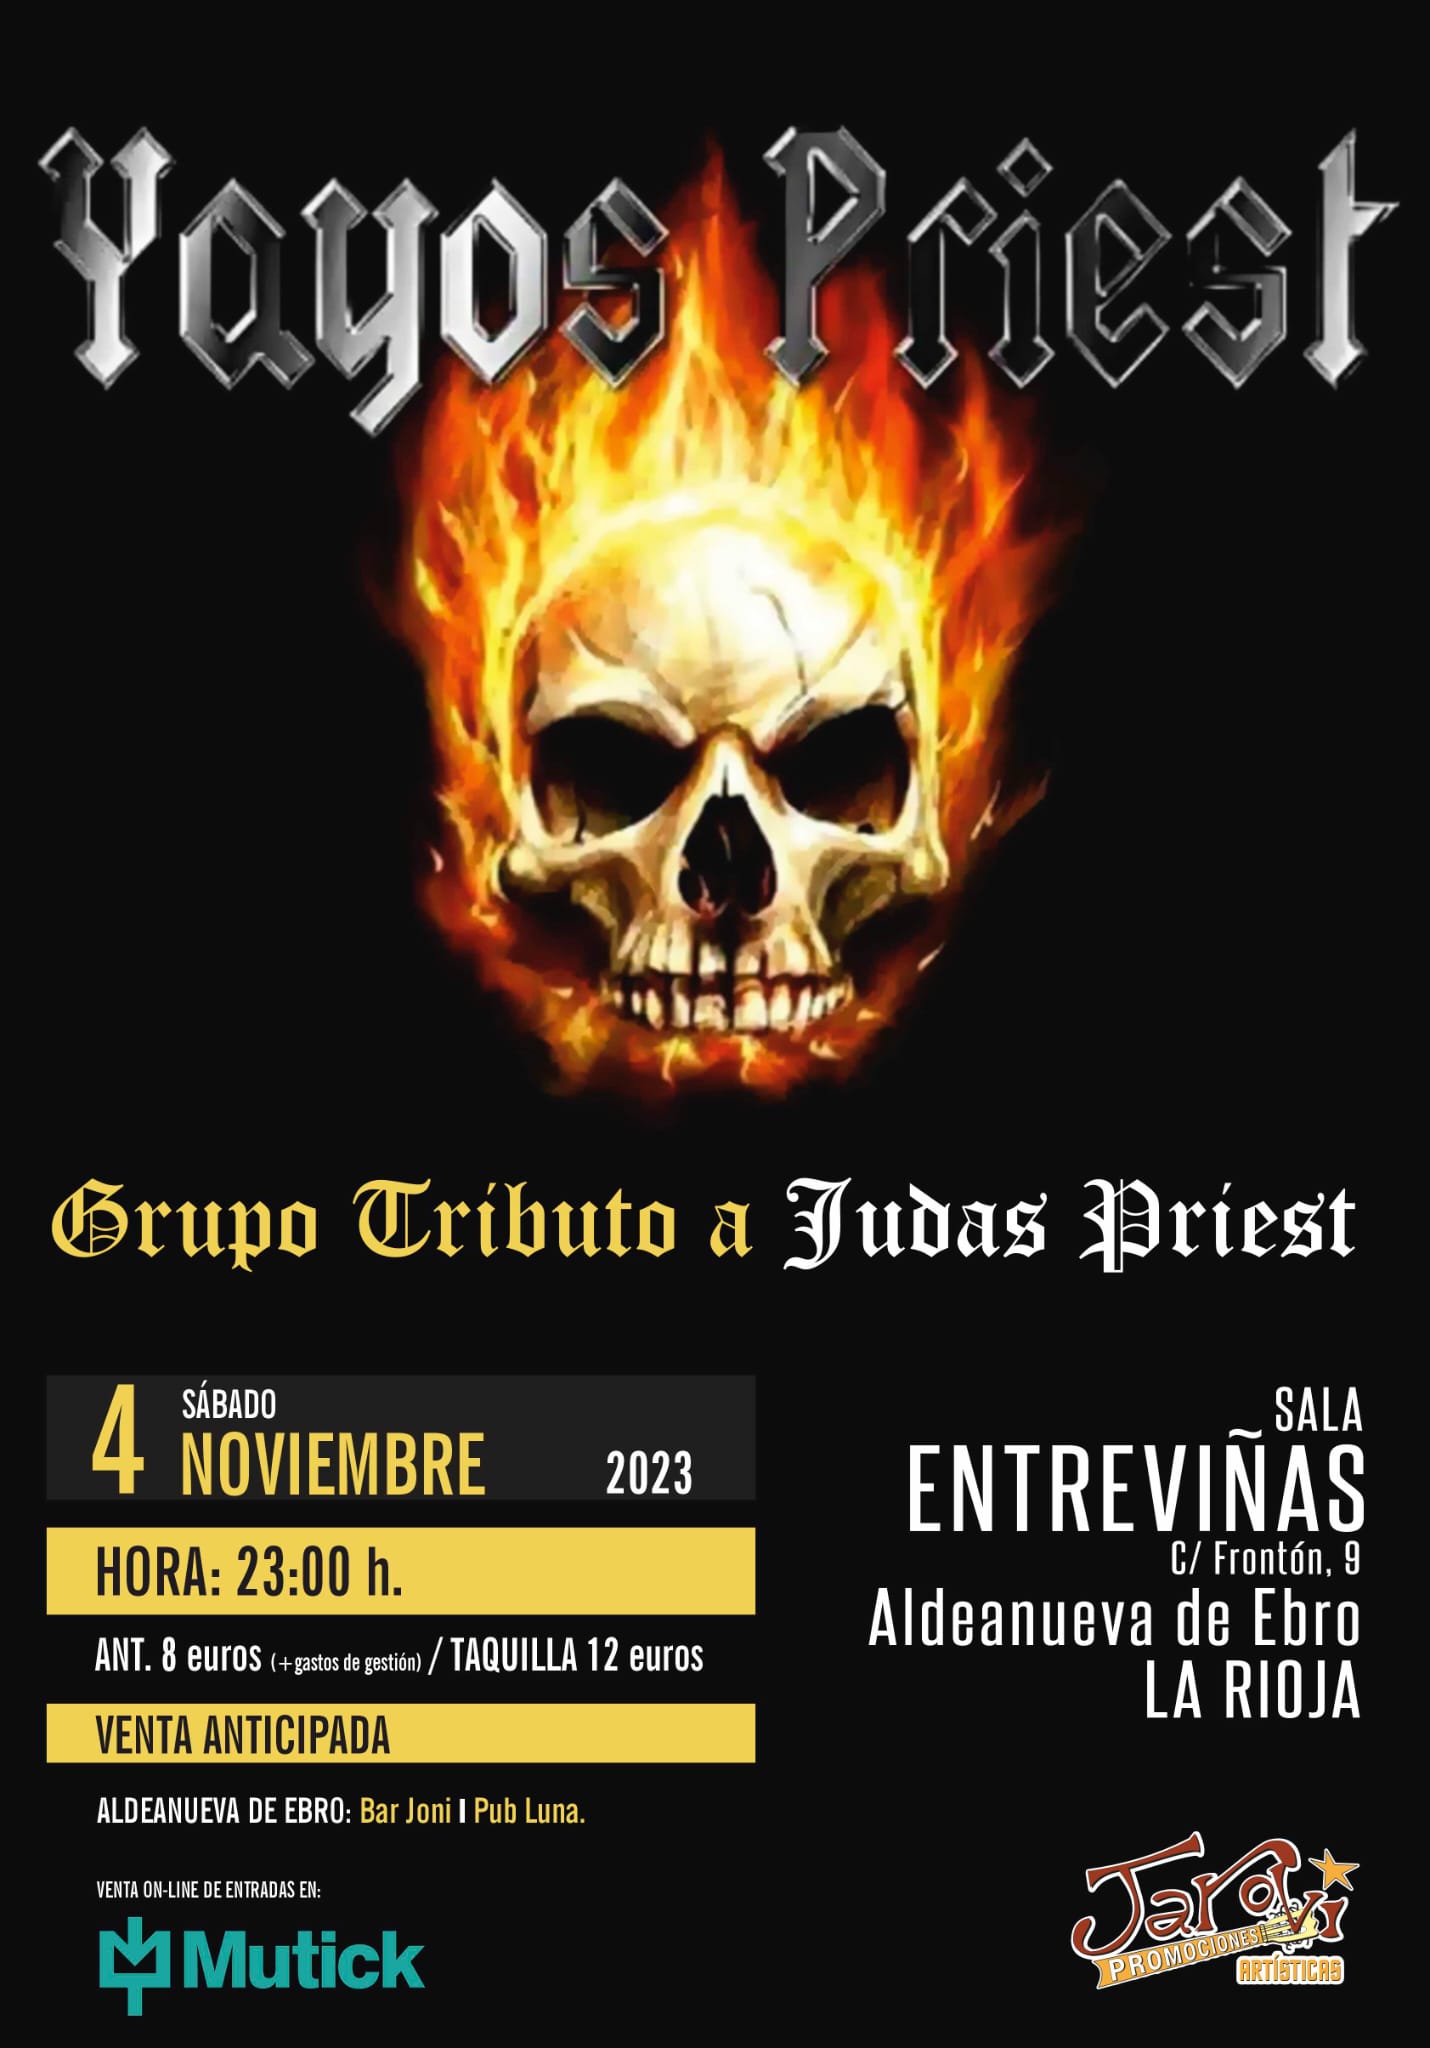 YAYOS PRIEST - Tributo a Judas Priest en Aldeanueva de Ebro - Mutick